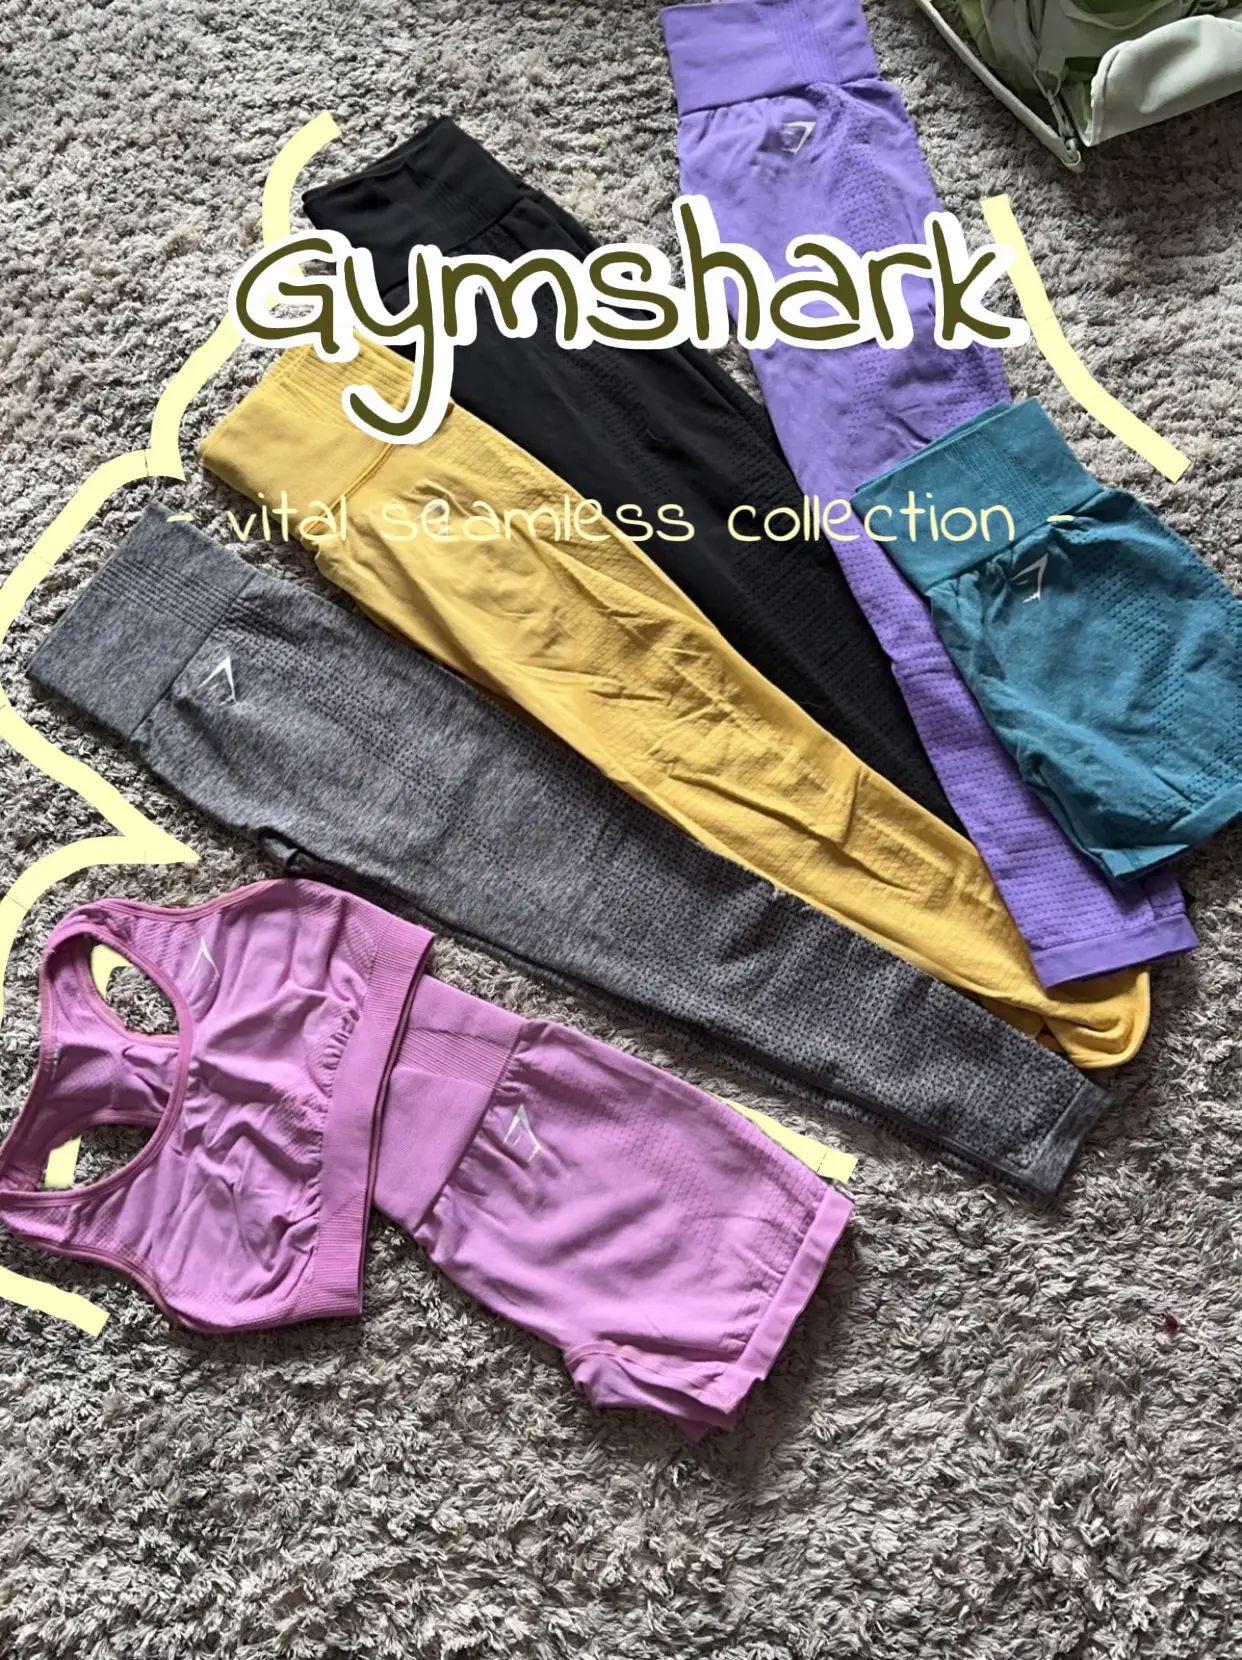 Gymshark - Vital Seamless Purple Leggings on Designer Wardrobe